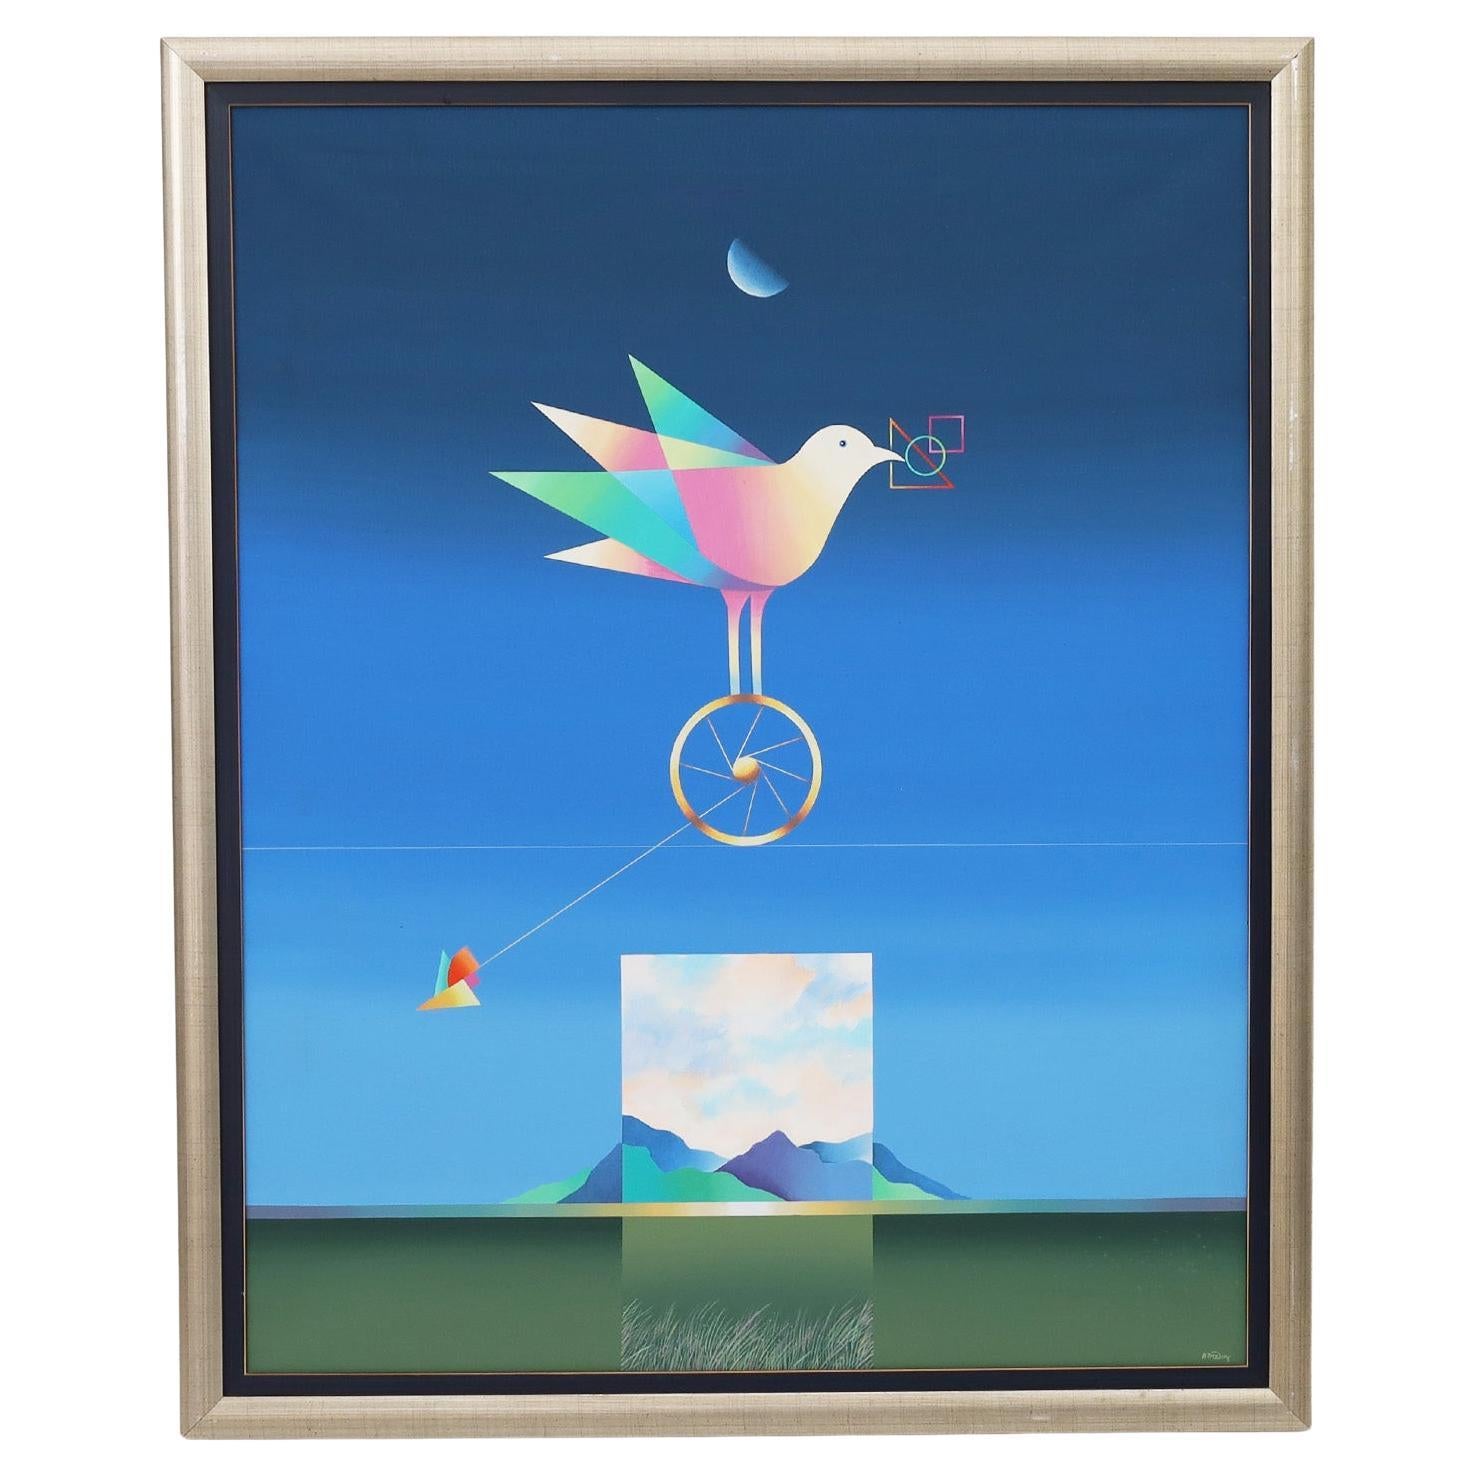 Modernist Ölgemälde auf Leinwand von einem Vogel oder Taube